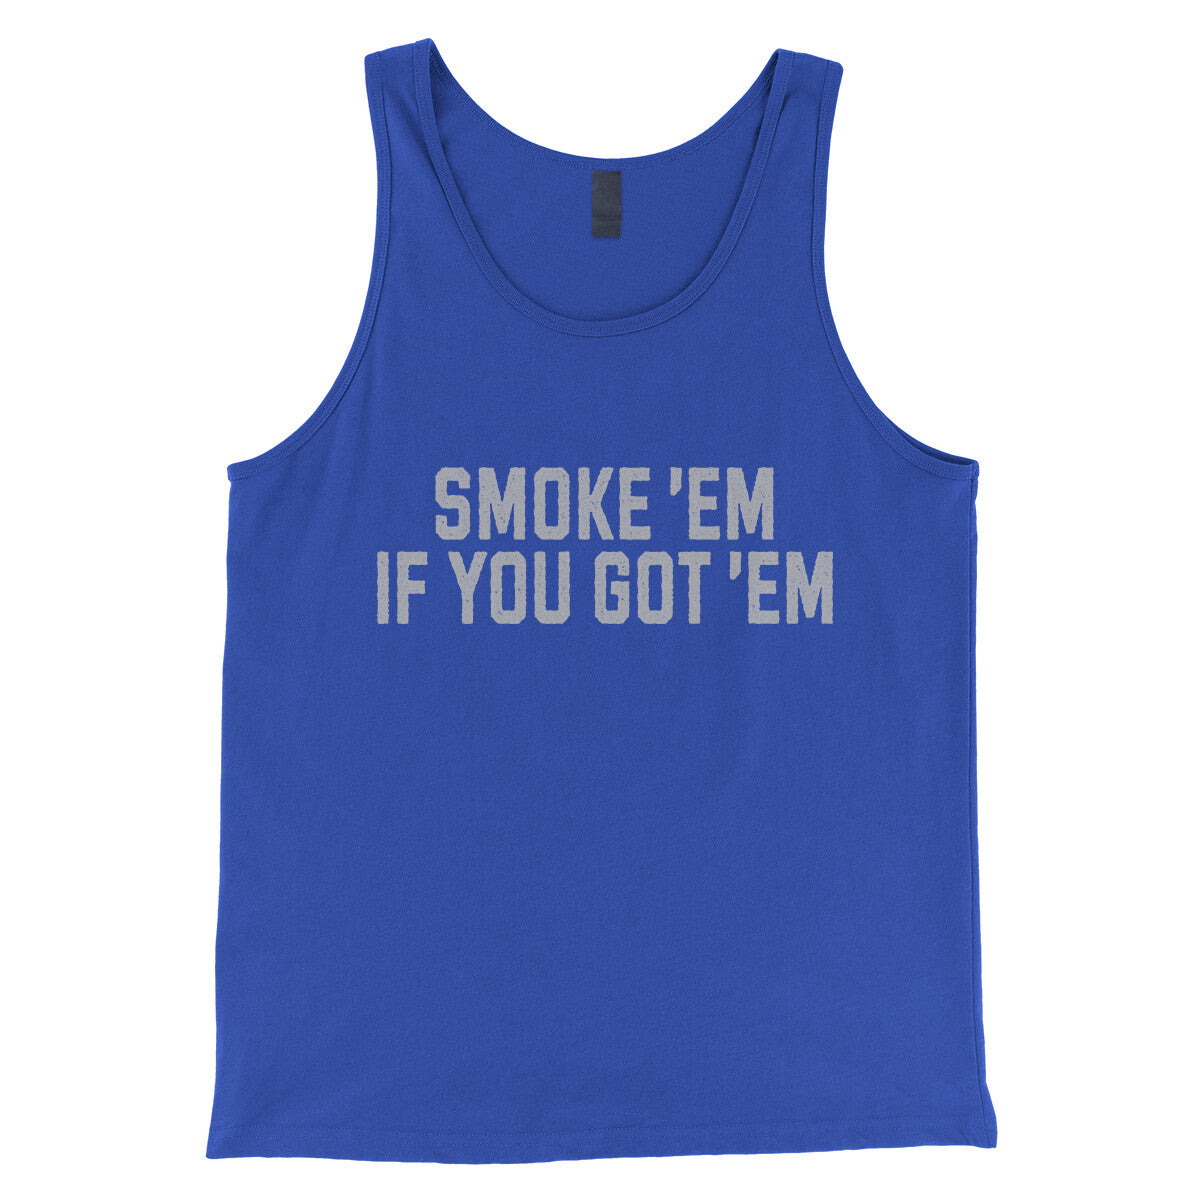 Smoke ‘em If you Got ‘em in True Royal Color